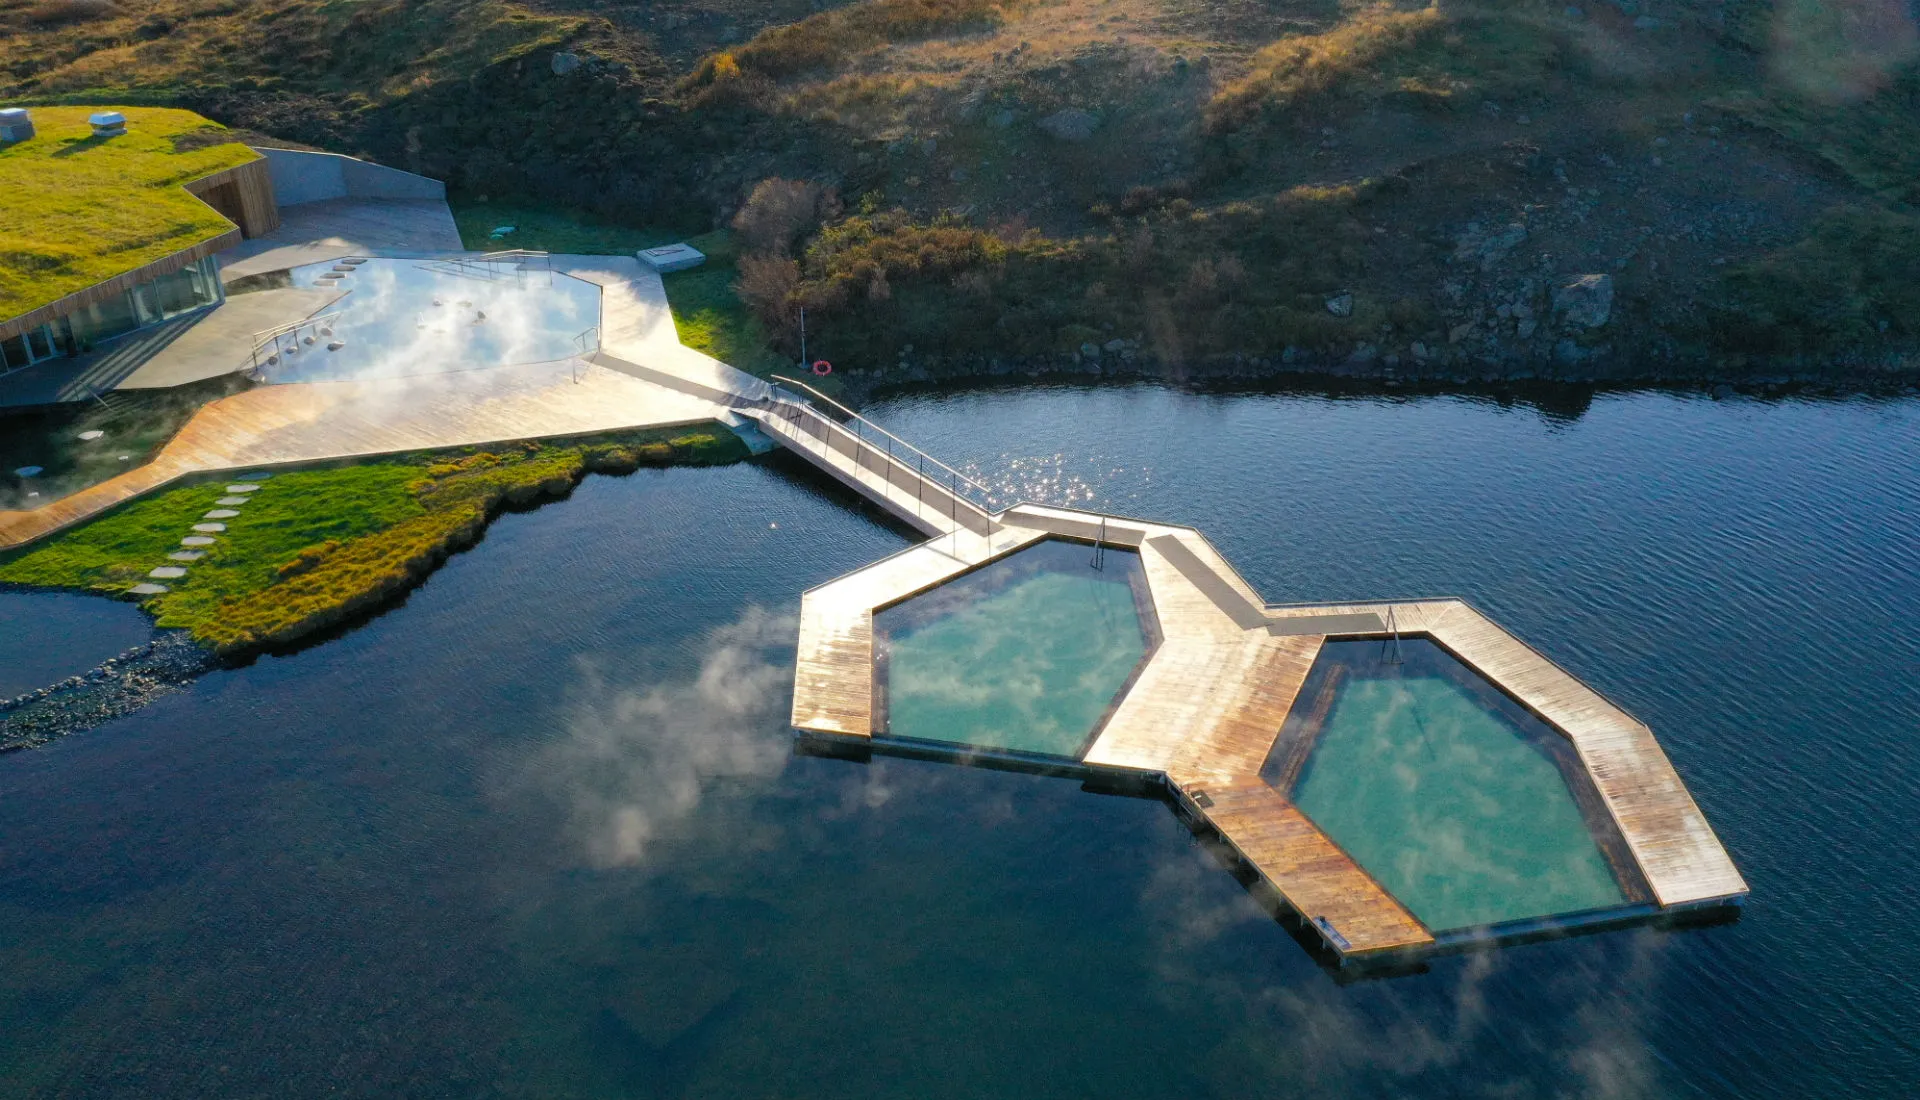 Vok Baths in Iceland, Europe | Hot Springs & Pools,Steam Baths & Saunas - Rated 3.9